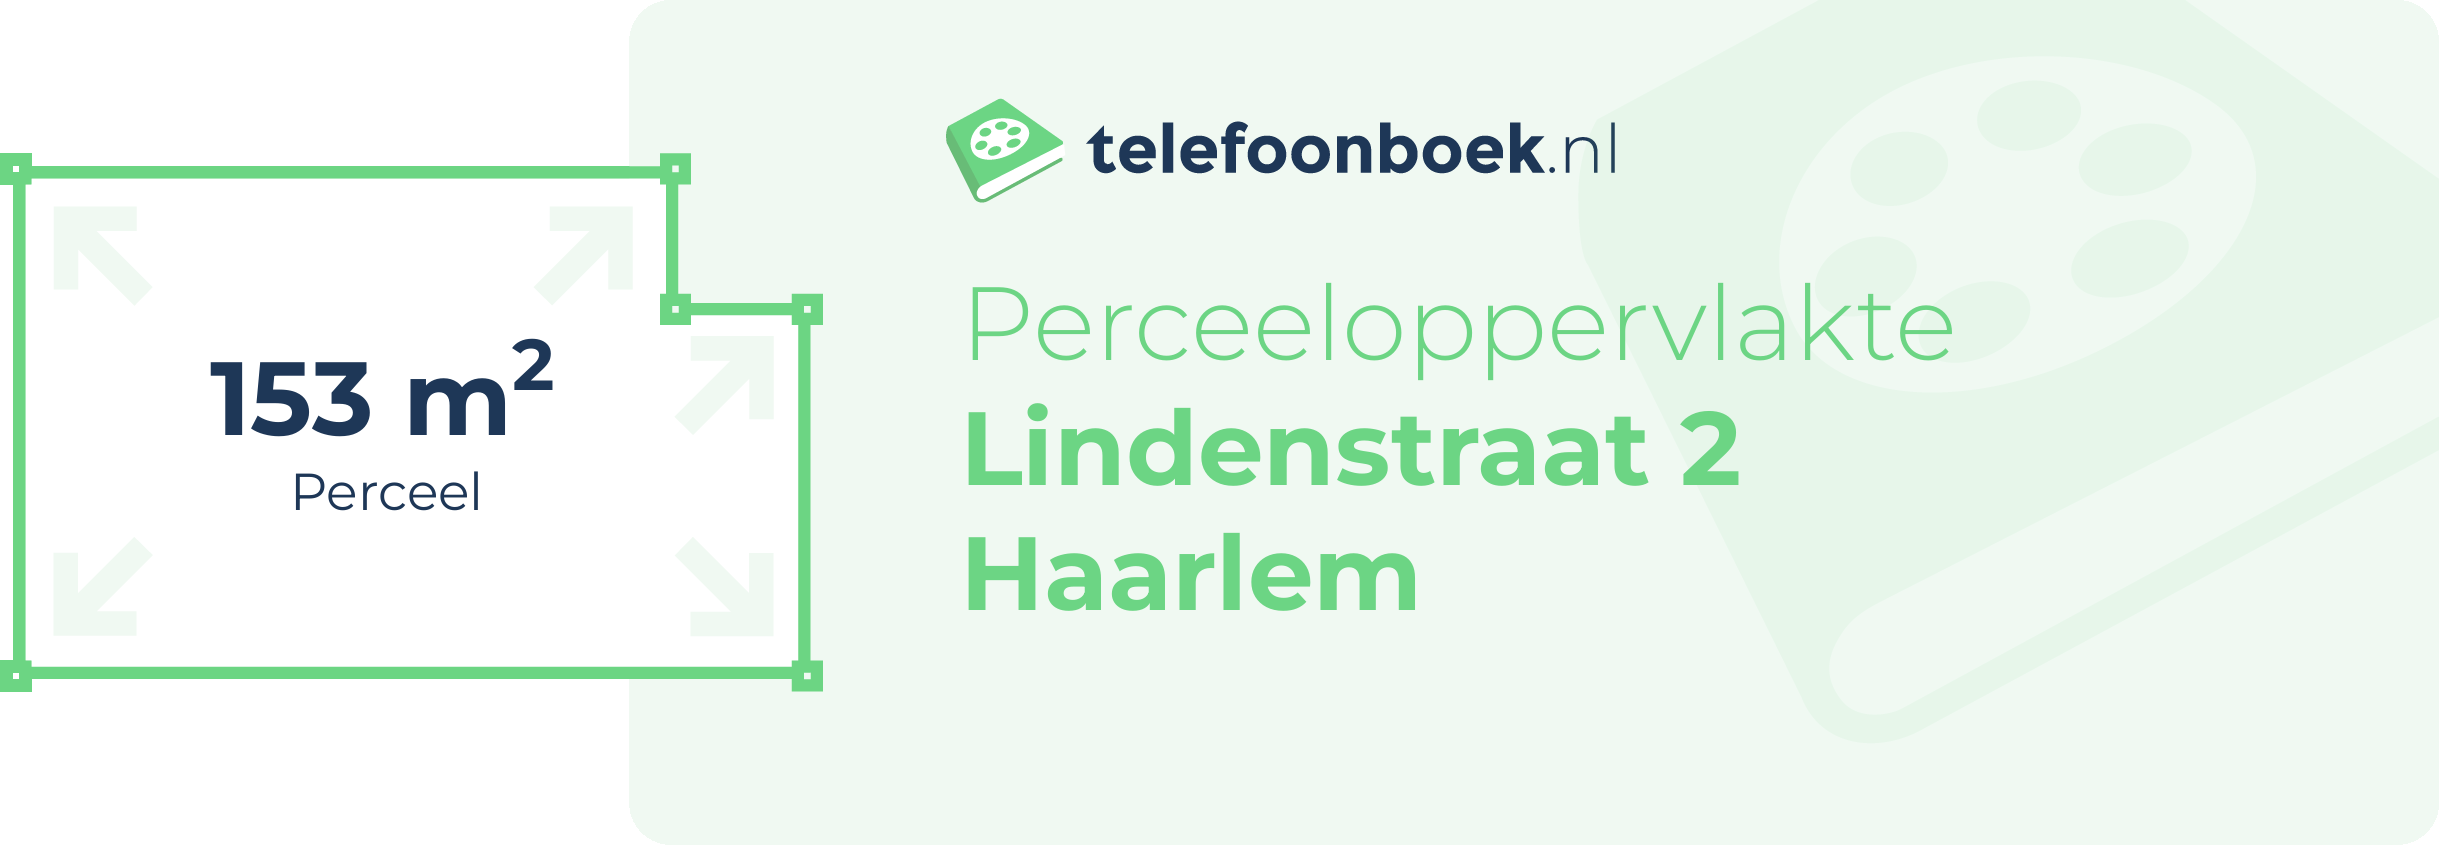 Perceeloppervlakte Lindenstraat 2 Haarlem